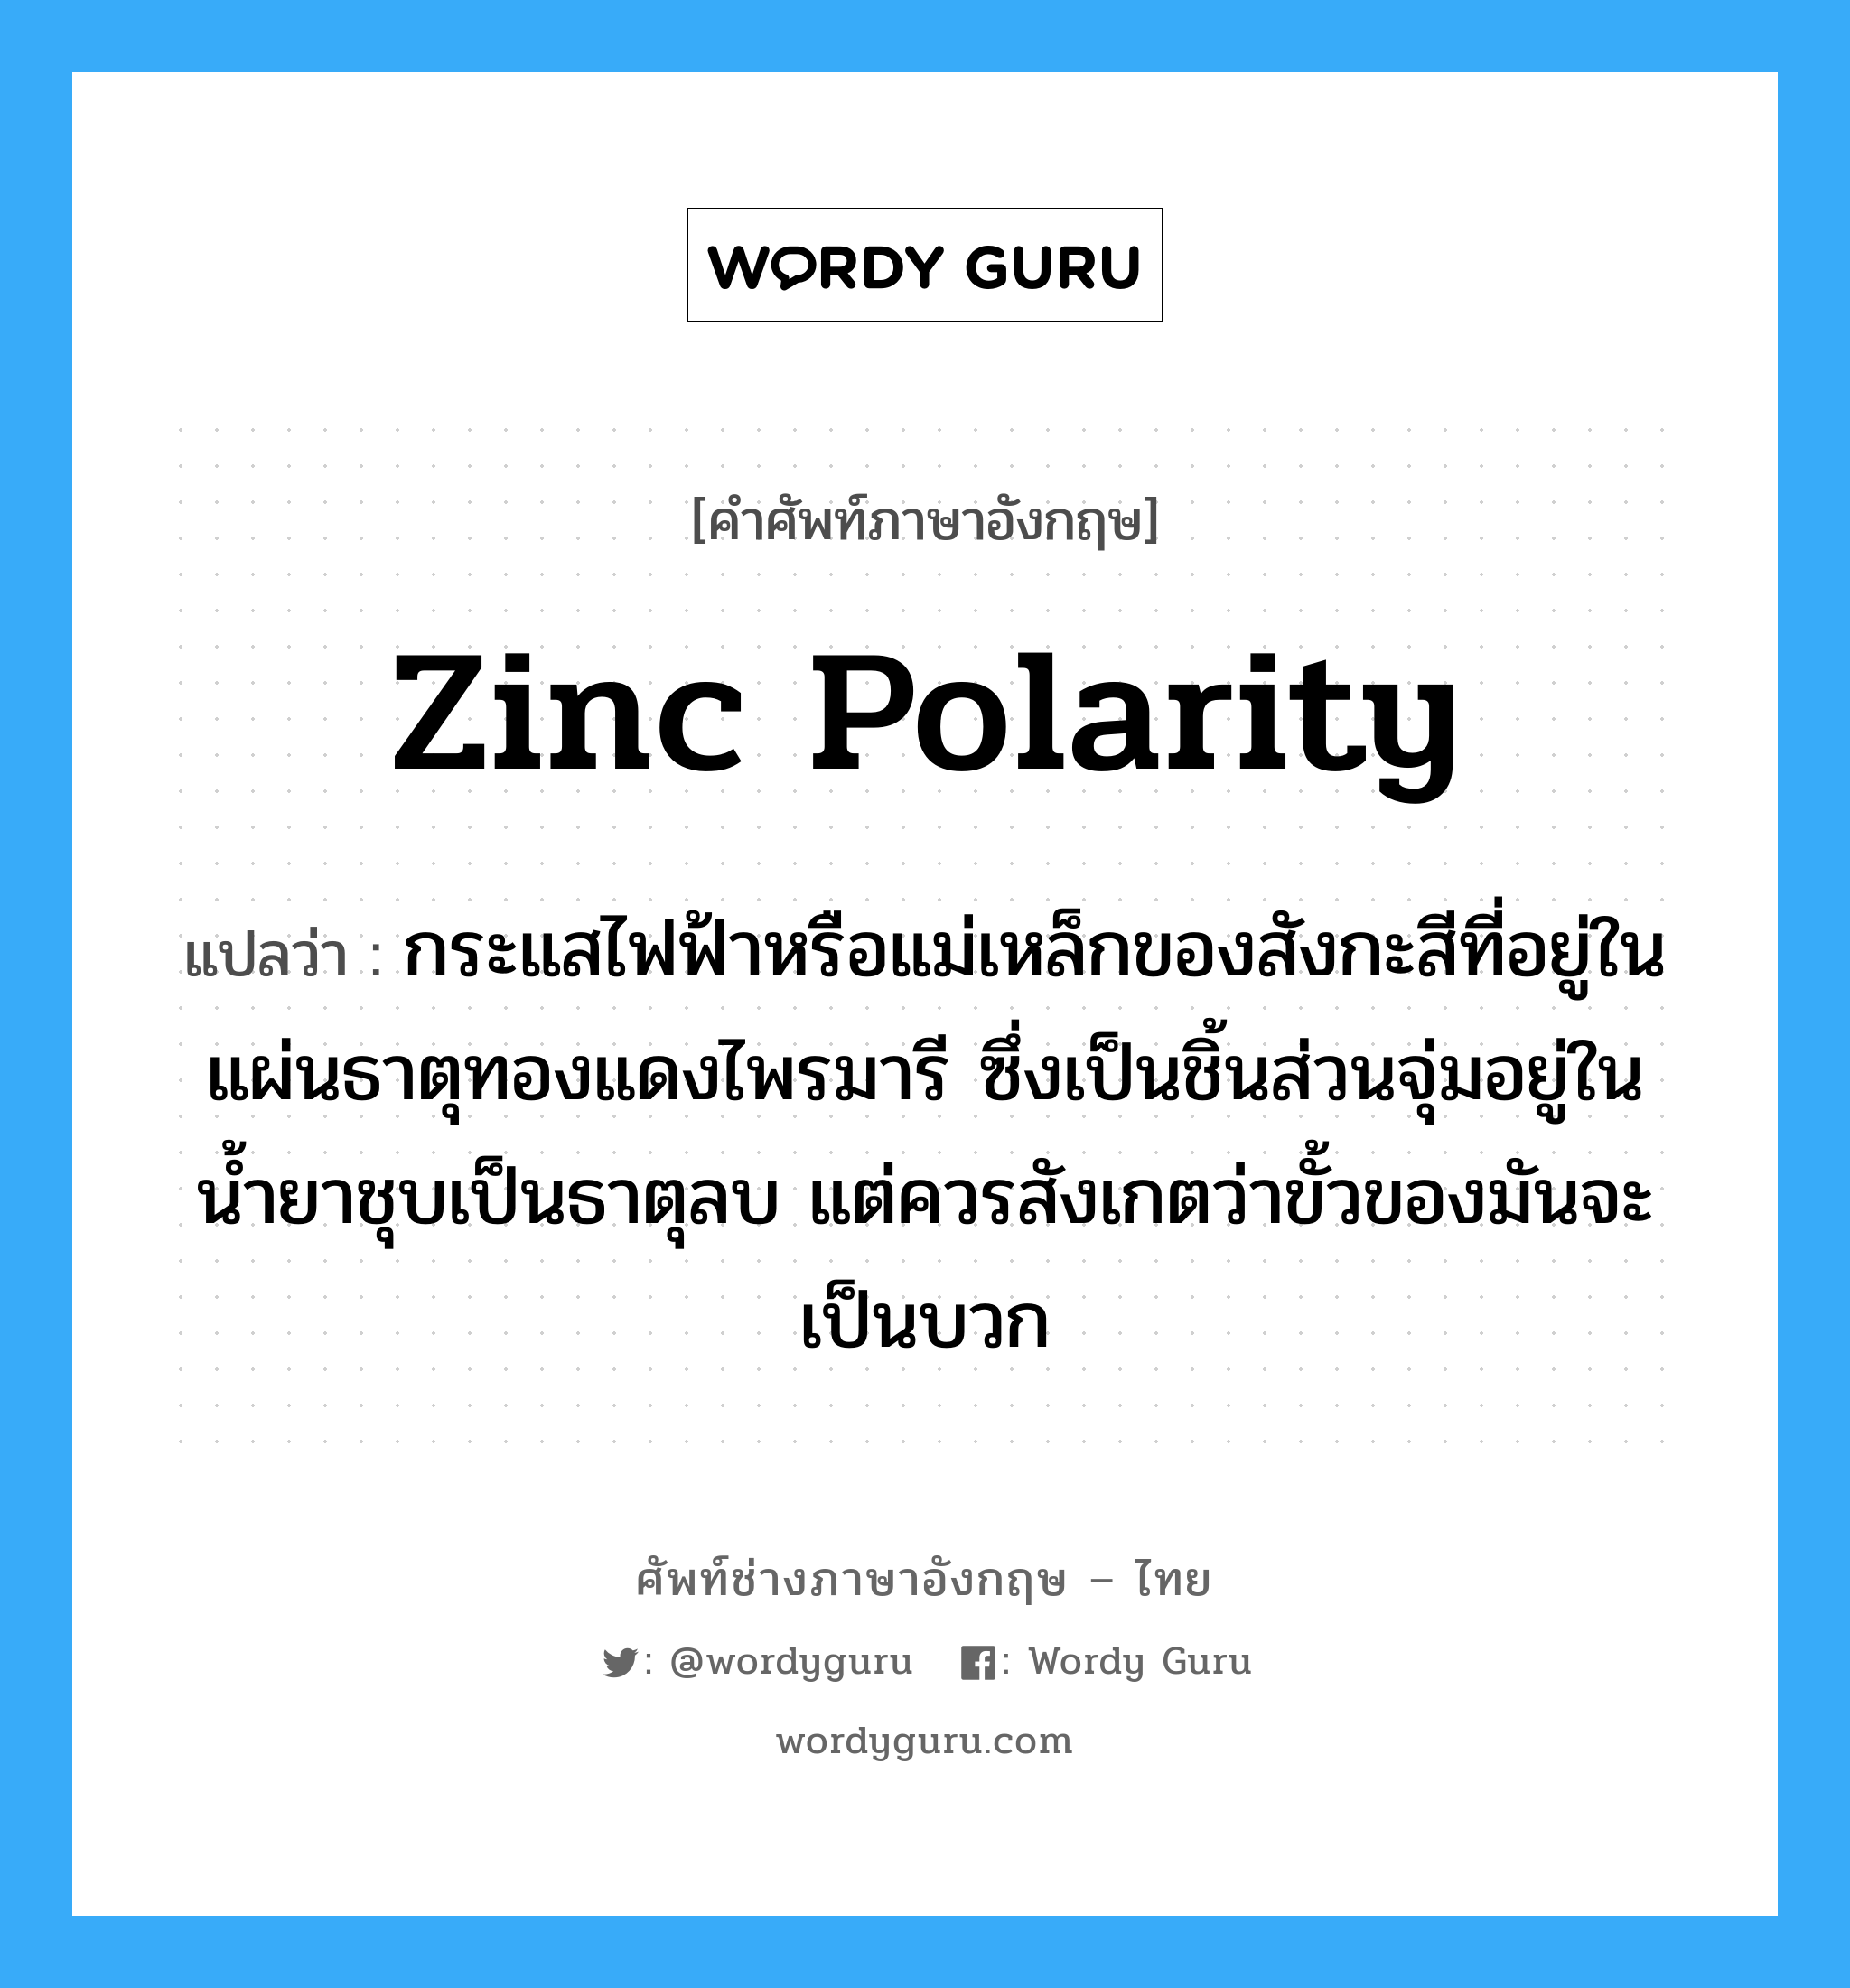 zinc polarity แปลว่า?, คำศัพท์ช่างภาษาอังกฤษ - ไทย zinc polarity คำศัพท์ภาษาอังกฤษ zinc polarity แปลว่า กระแสไฟฟ้าหรือแม่เหล็กของสังกะสีที่อยู่ในแผ่นธาตุทองแดงไพรมารี ซึ่งเป็นชิ้นส่วนจุ่มอยู่ในน้ำยาชุบเป็นธาตุลบ แต่ควรสังเกตว่าขั้วของมันจะเป็นบวก